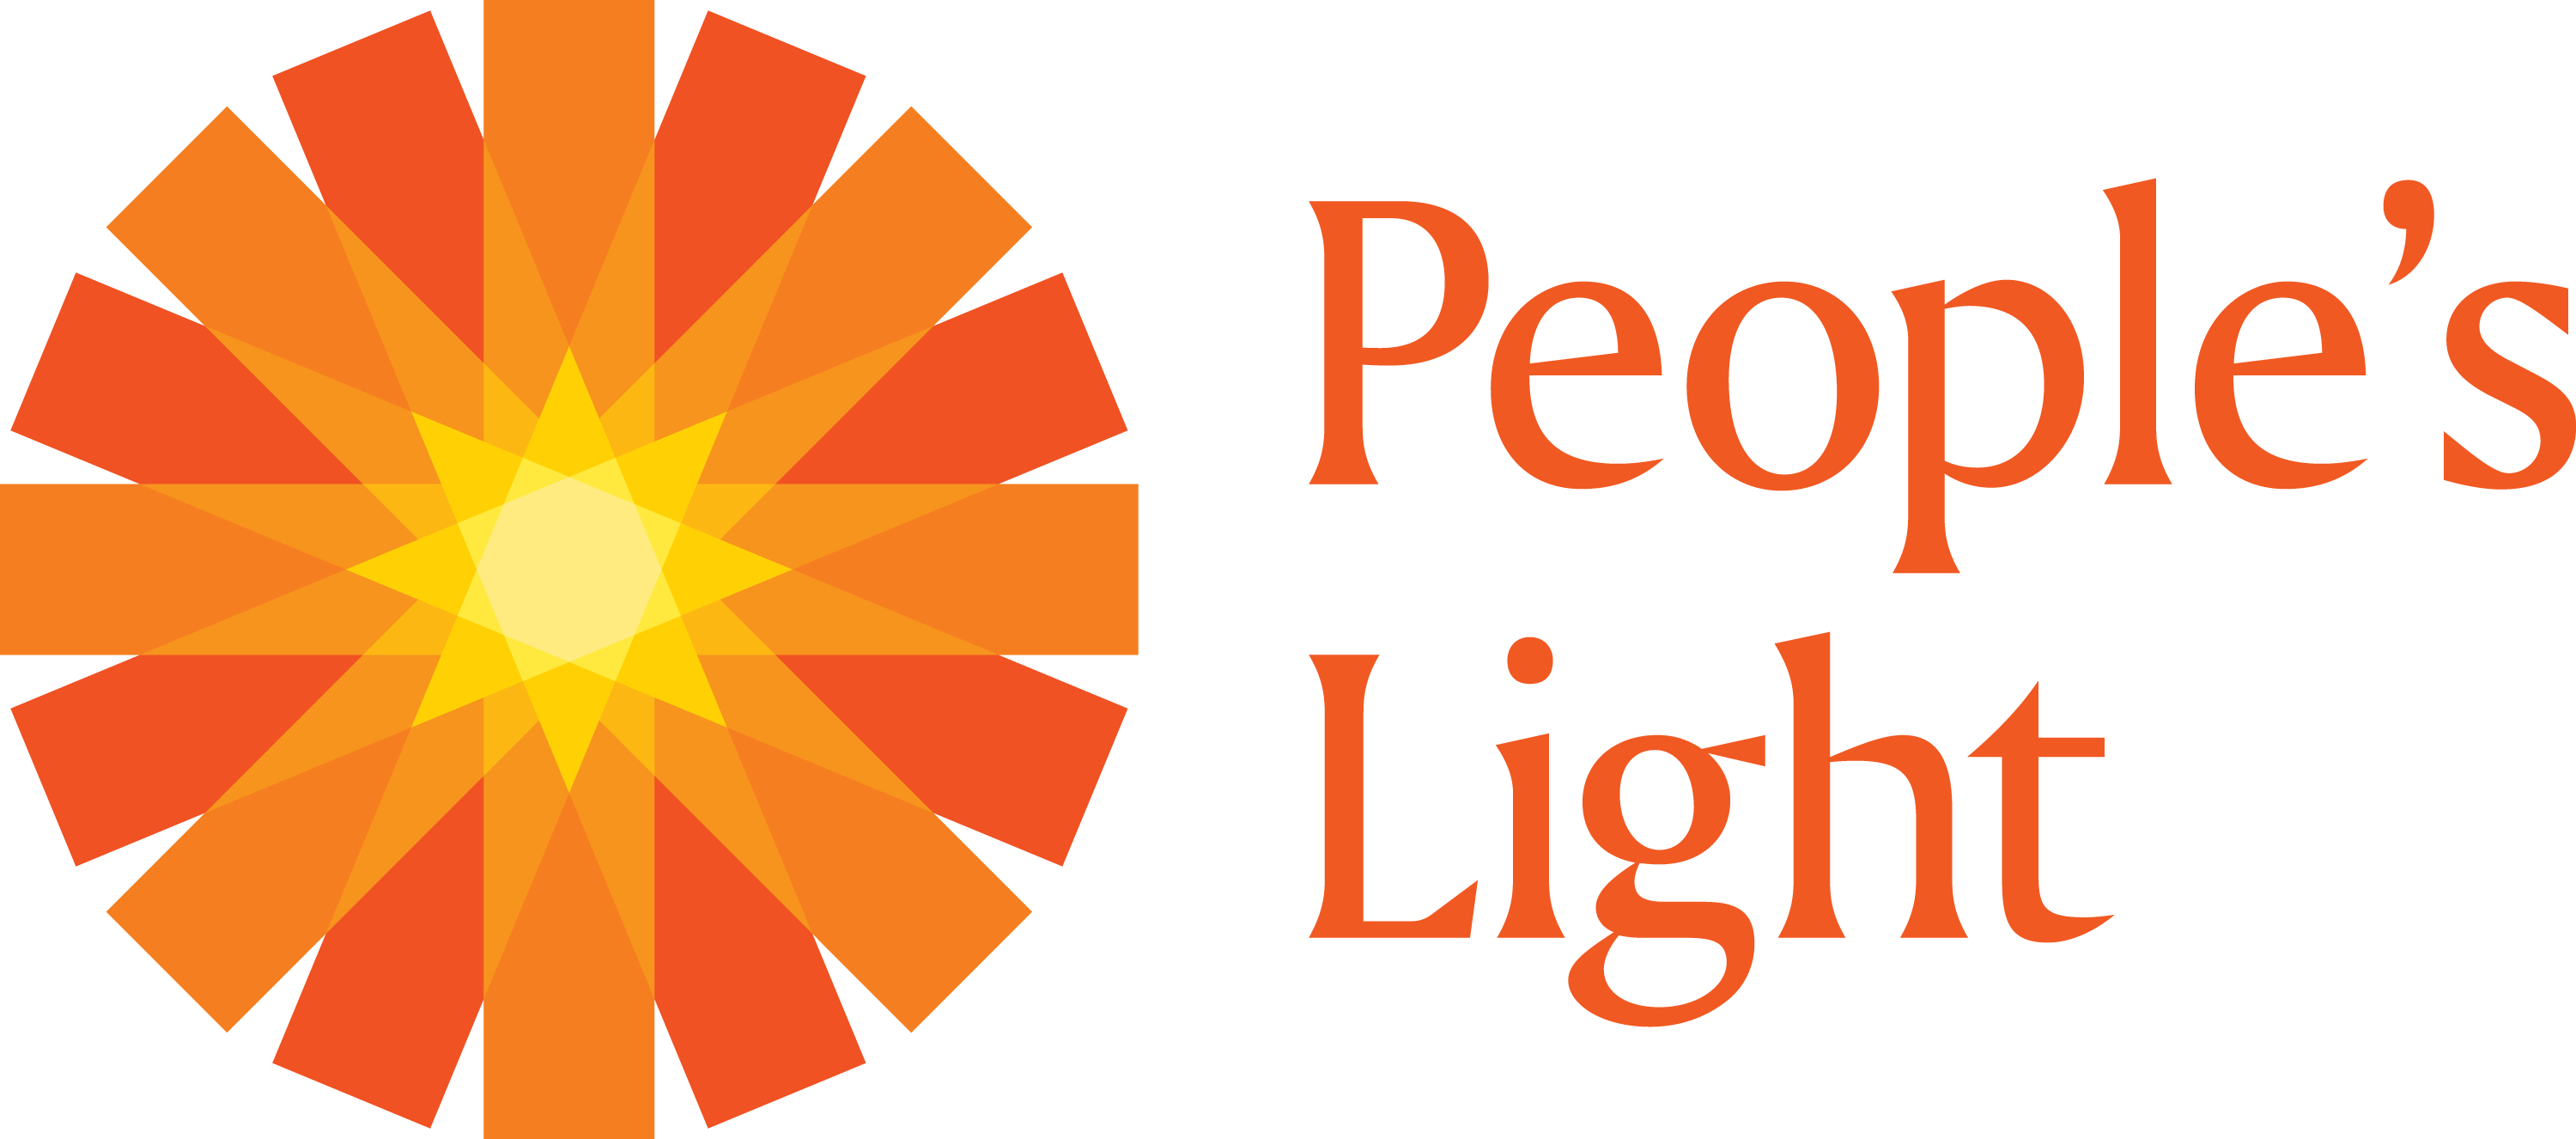 People's Light